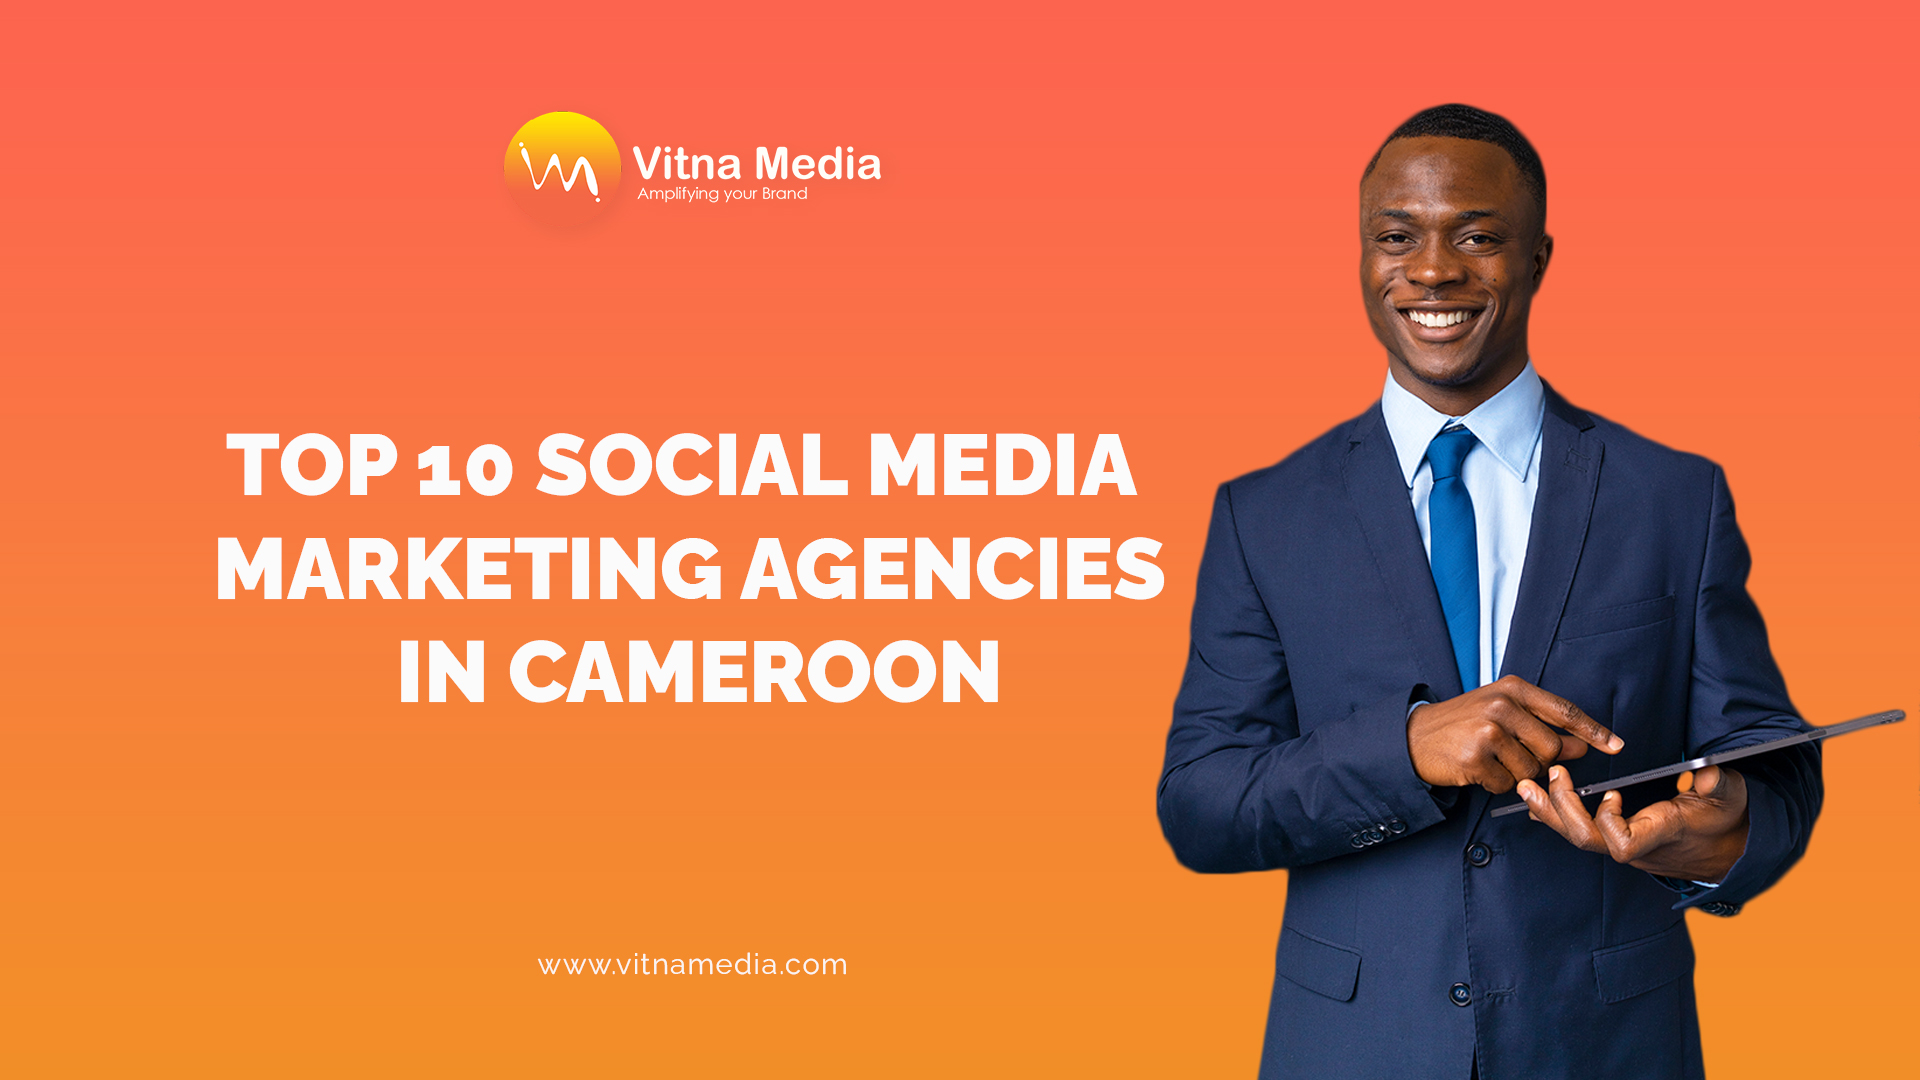 Top 10 Social Media Marketing Agencies in Cameroon